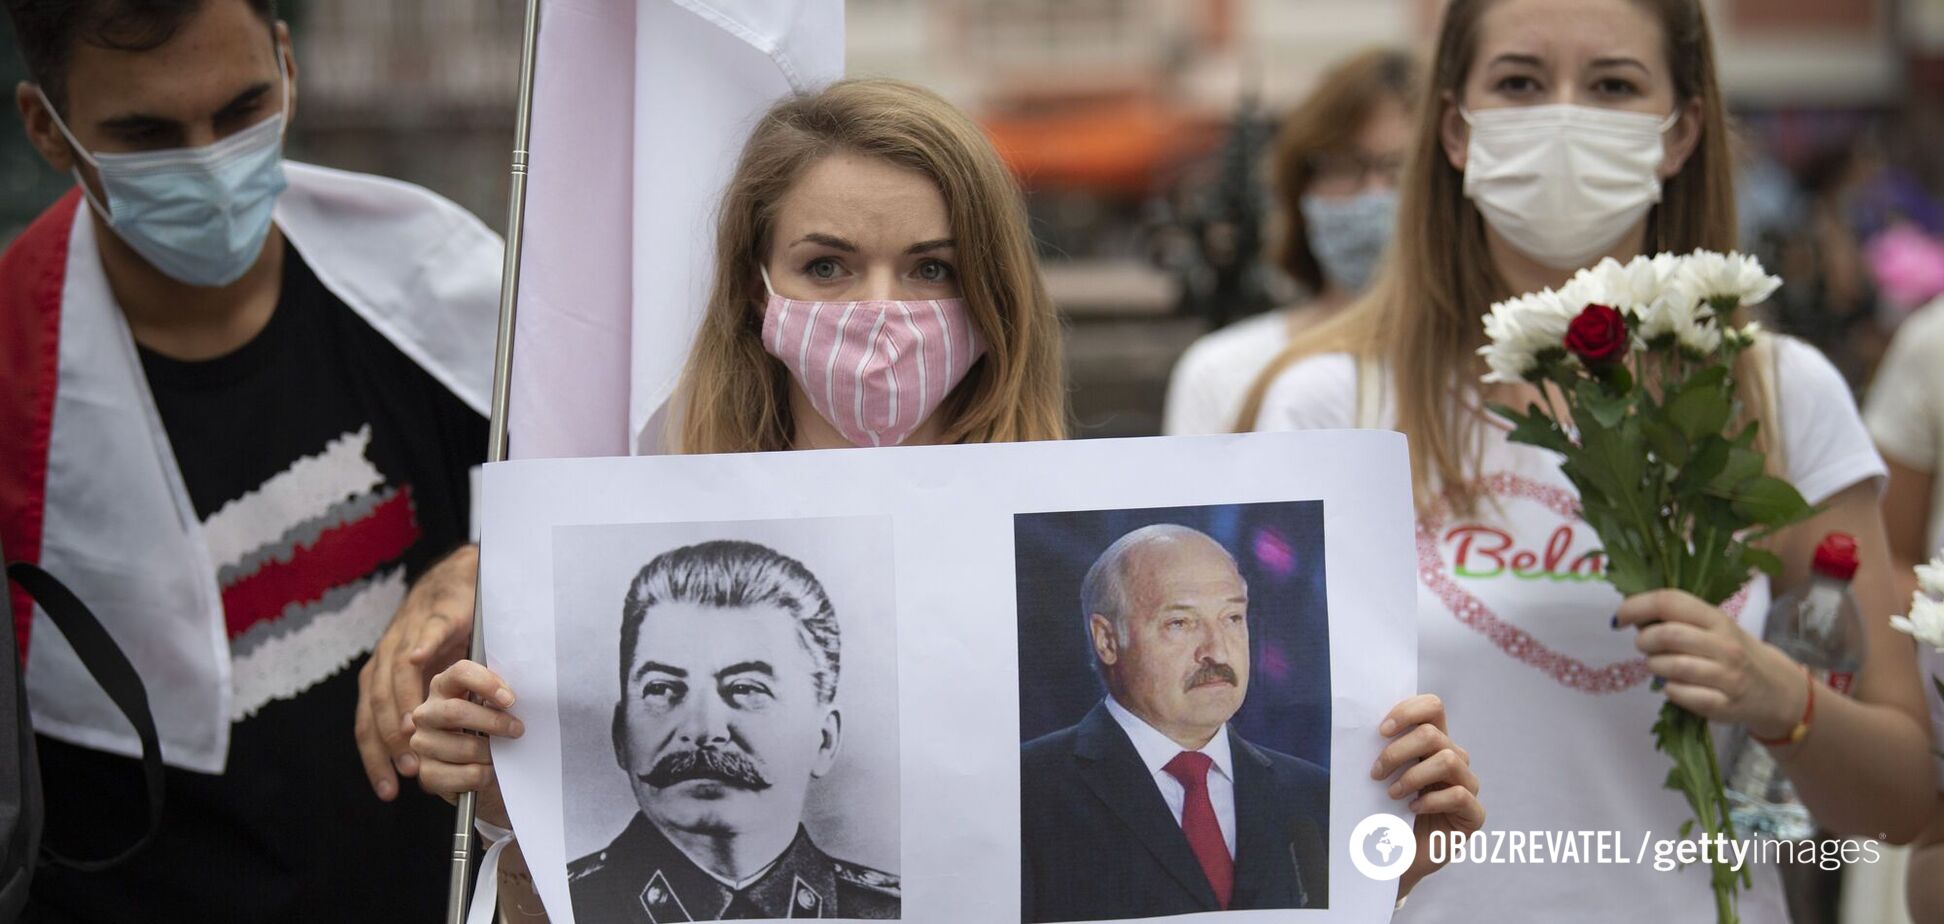 Лебедько: Лукашенко розв'язує проблему з протестами, як Сталін